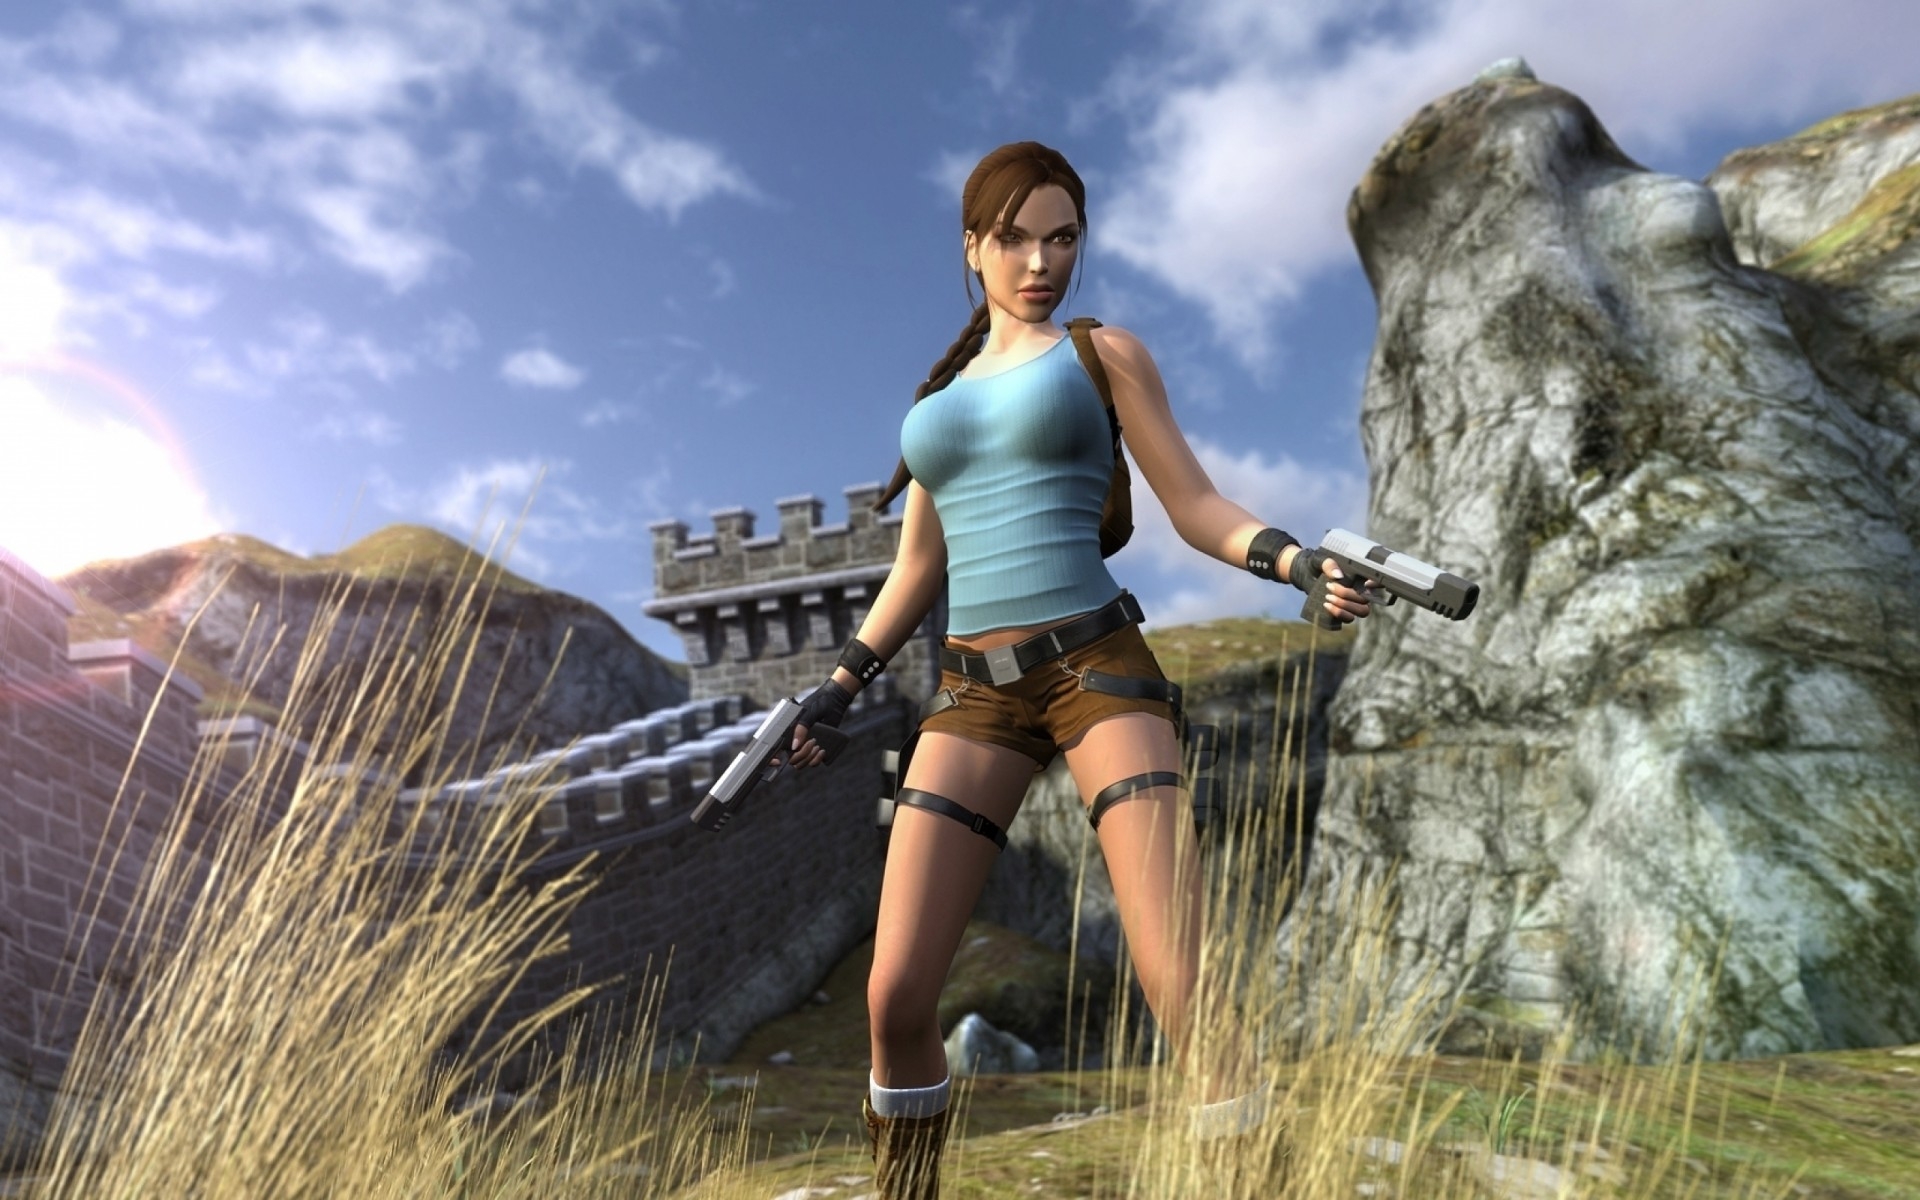 Bom tấn "Tomb Raider II" đã có mặt trên Google Play